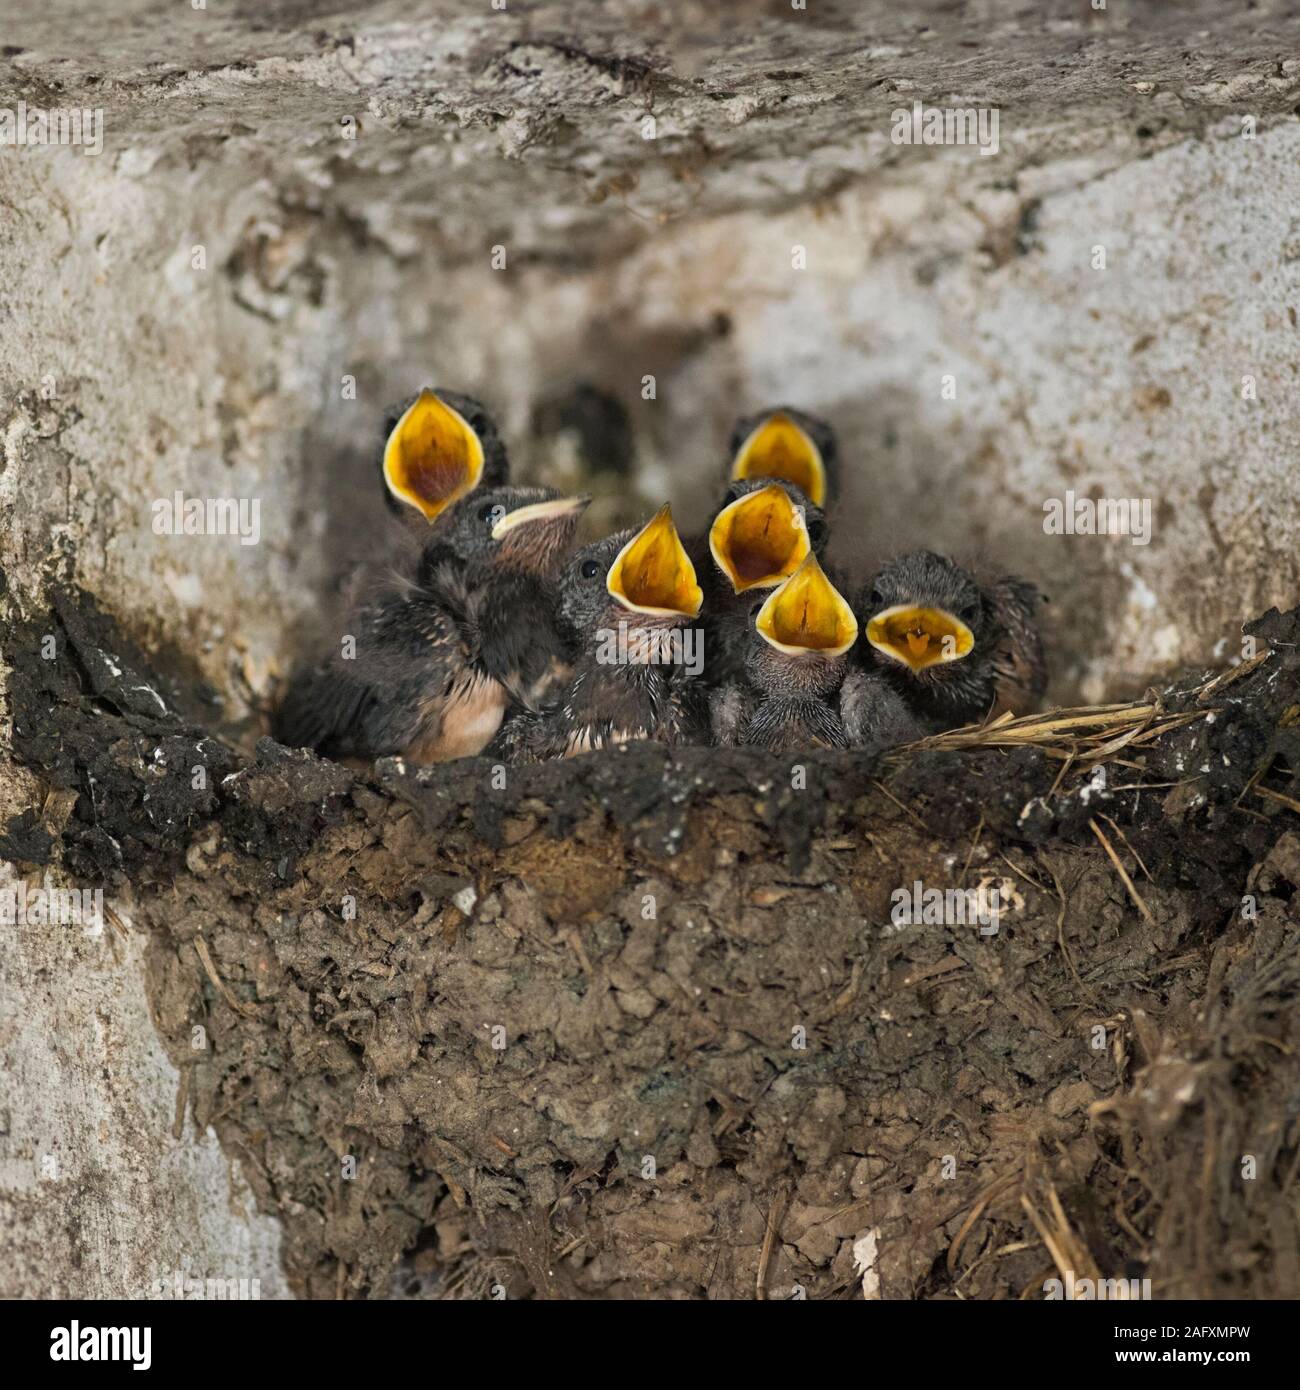 Rauchschwalben (Hirundo rustica), sieben jungen Küken in einem Nest, Betteln, weit geöffneten gelben Schnäbeln, sieht lustig, wildilfe, Europa. Stockfoto